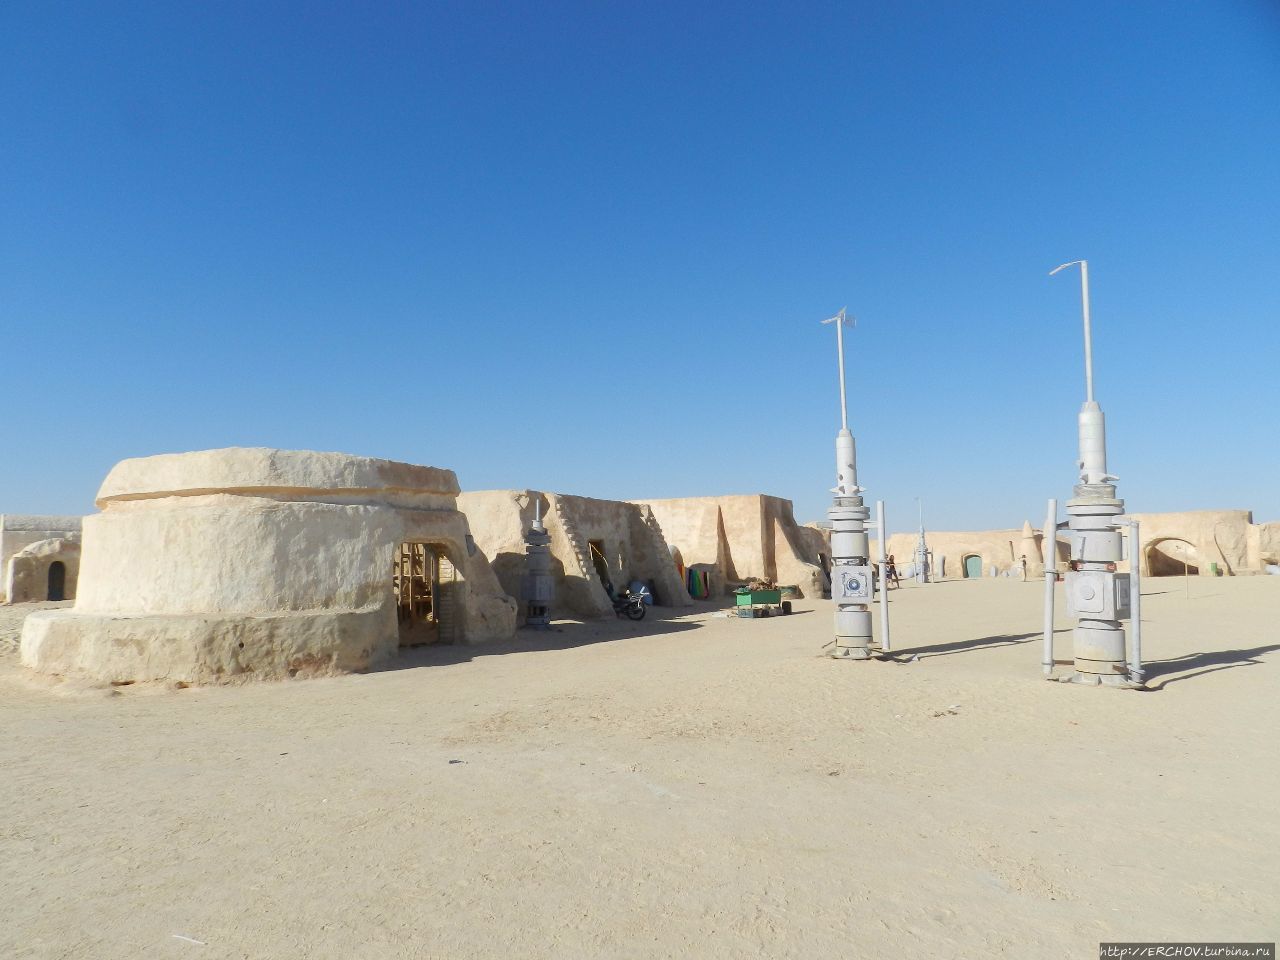 Экскурсия в Сахару. Ч — 6. Мос-Эспе — родина звёздного героя Мос-Эспа (место съемок Звездных Войн), Тунис